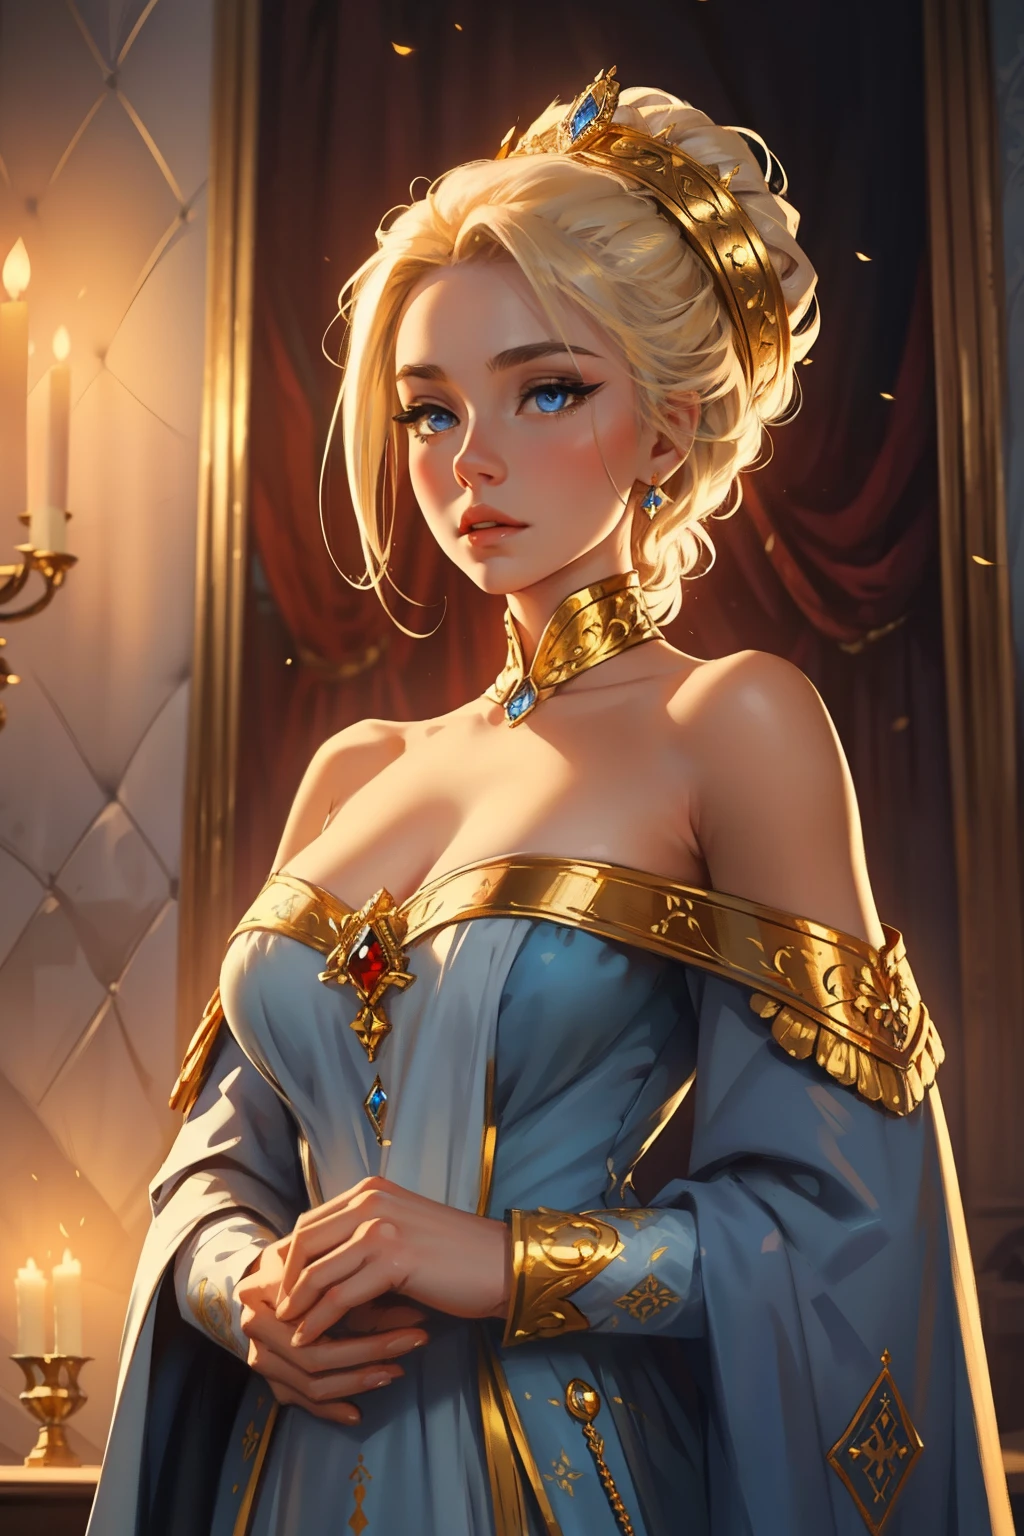 ファンタジー, 19世紀, 皇后, 女性, 繊細な顔, 淡いブロンドの髪, 整えられた髪, 青い目, 肩が開いた白い王室のドレスを着て, 布地に金色の模様, 肩には君主の衣装と赤いリボンを着けている, 高解像度